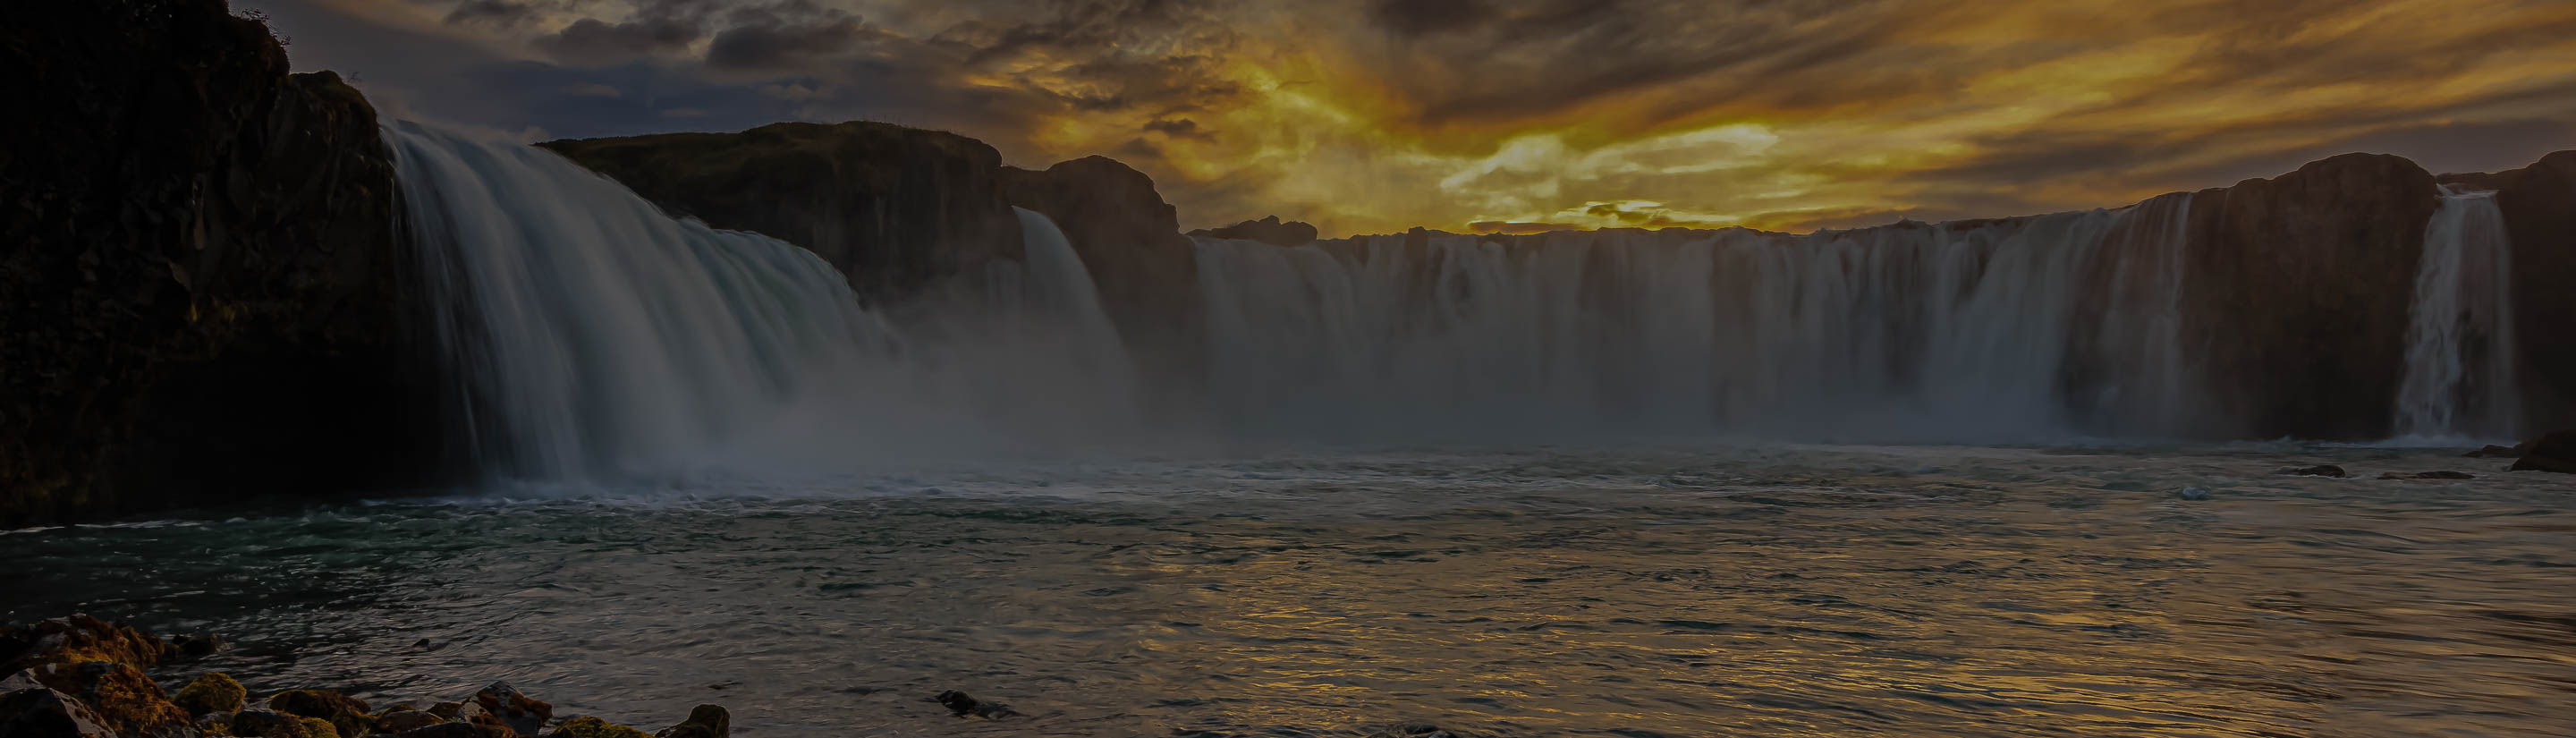 Island Wasserfall Godafoss Sonne